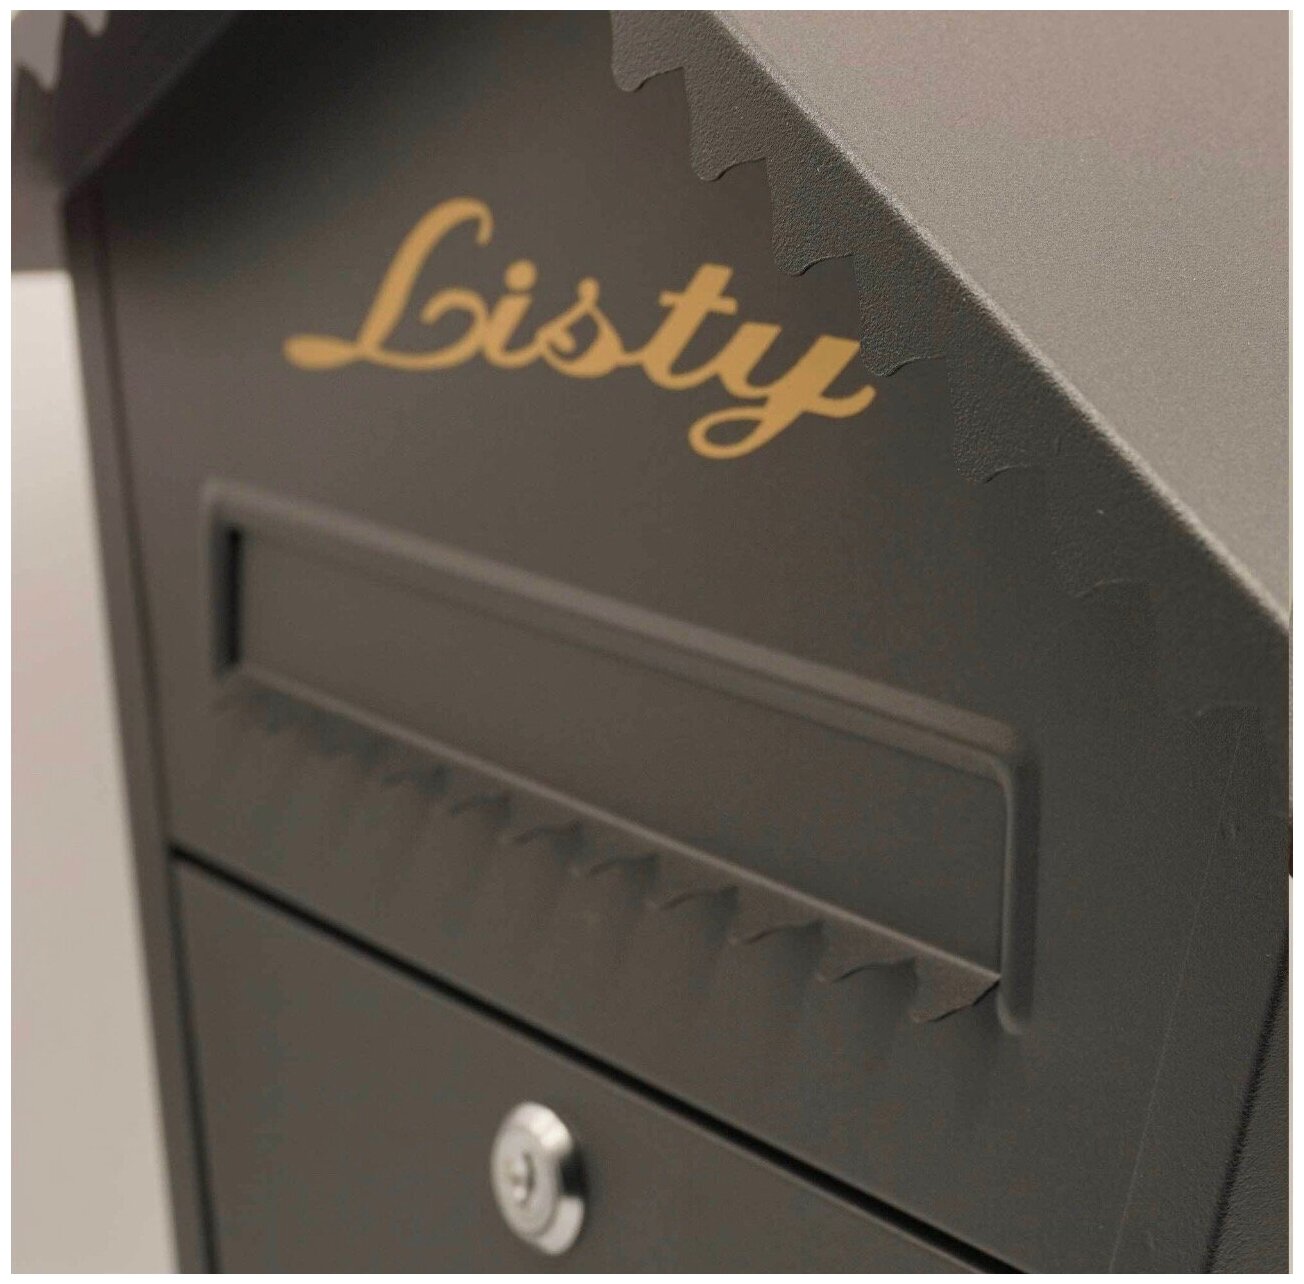 Почтовый ящик MASTER LOCK K-37002 цвет: черный / почтовый ящик металлический/ почтовый ящик с замком/ ящик почтовый/ почтовый ящик с замком уличный - фотография № 3